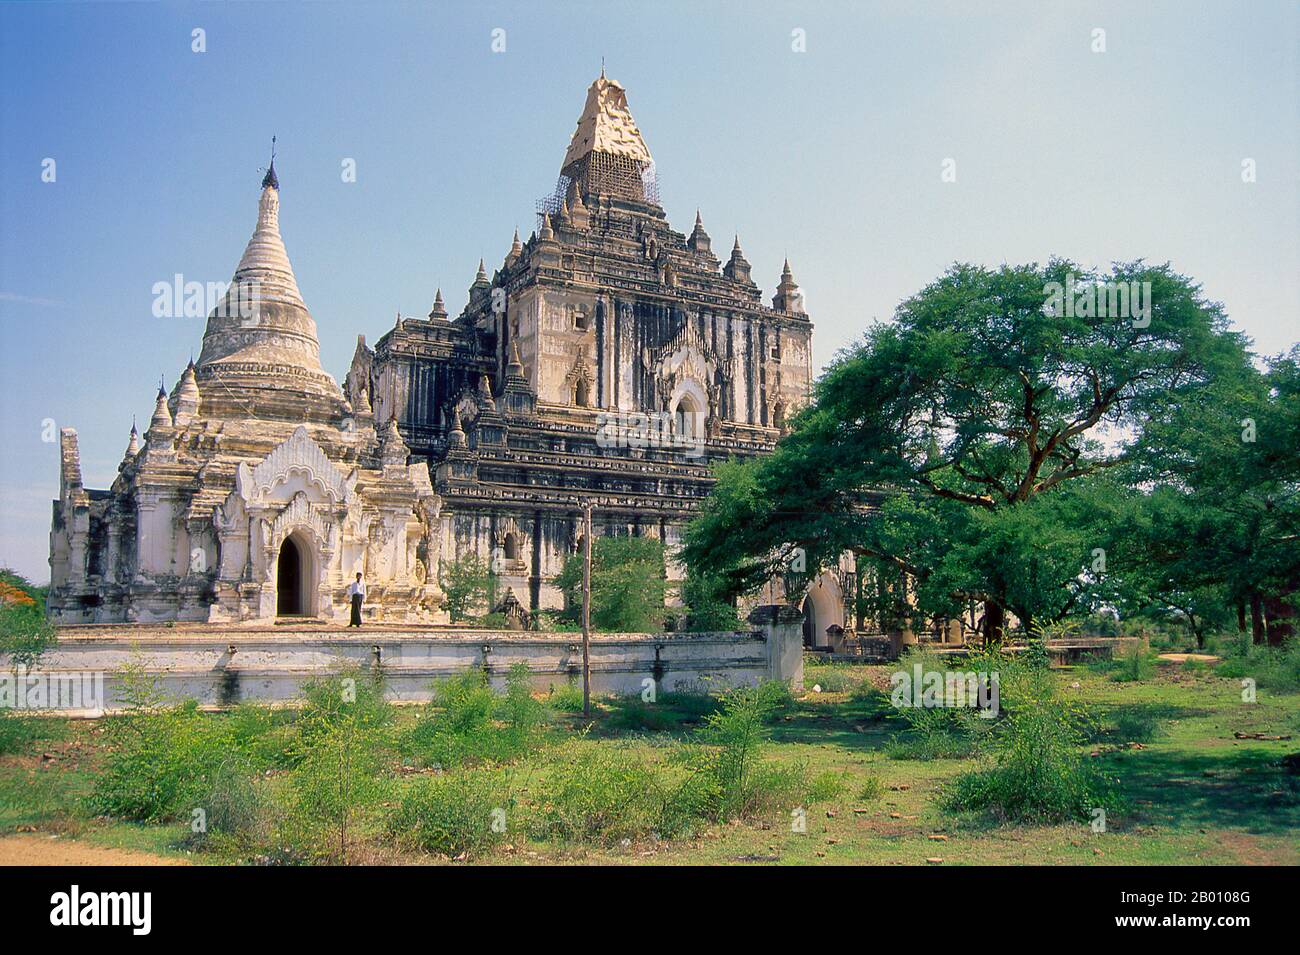 Burma: Thatbyinnyu Tempel, Bagan (Pagan) Alte Stadt. Thatbyinnyu Tempel wurde in der Mitte des 12th. Jahrhunderts während der Herrschaft von König Alaungsitthu gebaut. Bagan, früher Pagan, wurde hauptsächlich zwischen dem 11th. Und 13th. Jahrhundert erbaut. Offiziell Arimaddanapura oder Arimaddana (die Stadt des feindlichen Crusher) und auch als Tambadipa (das Land des Kupfers) oder Tassadessa (das vertrocknende Land) bekannt, war es die Hauptstadt mehrerer alter Königreiche in Burma. Stockfoto